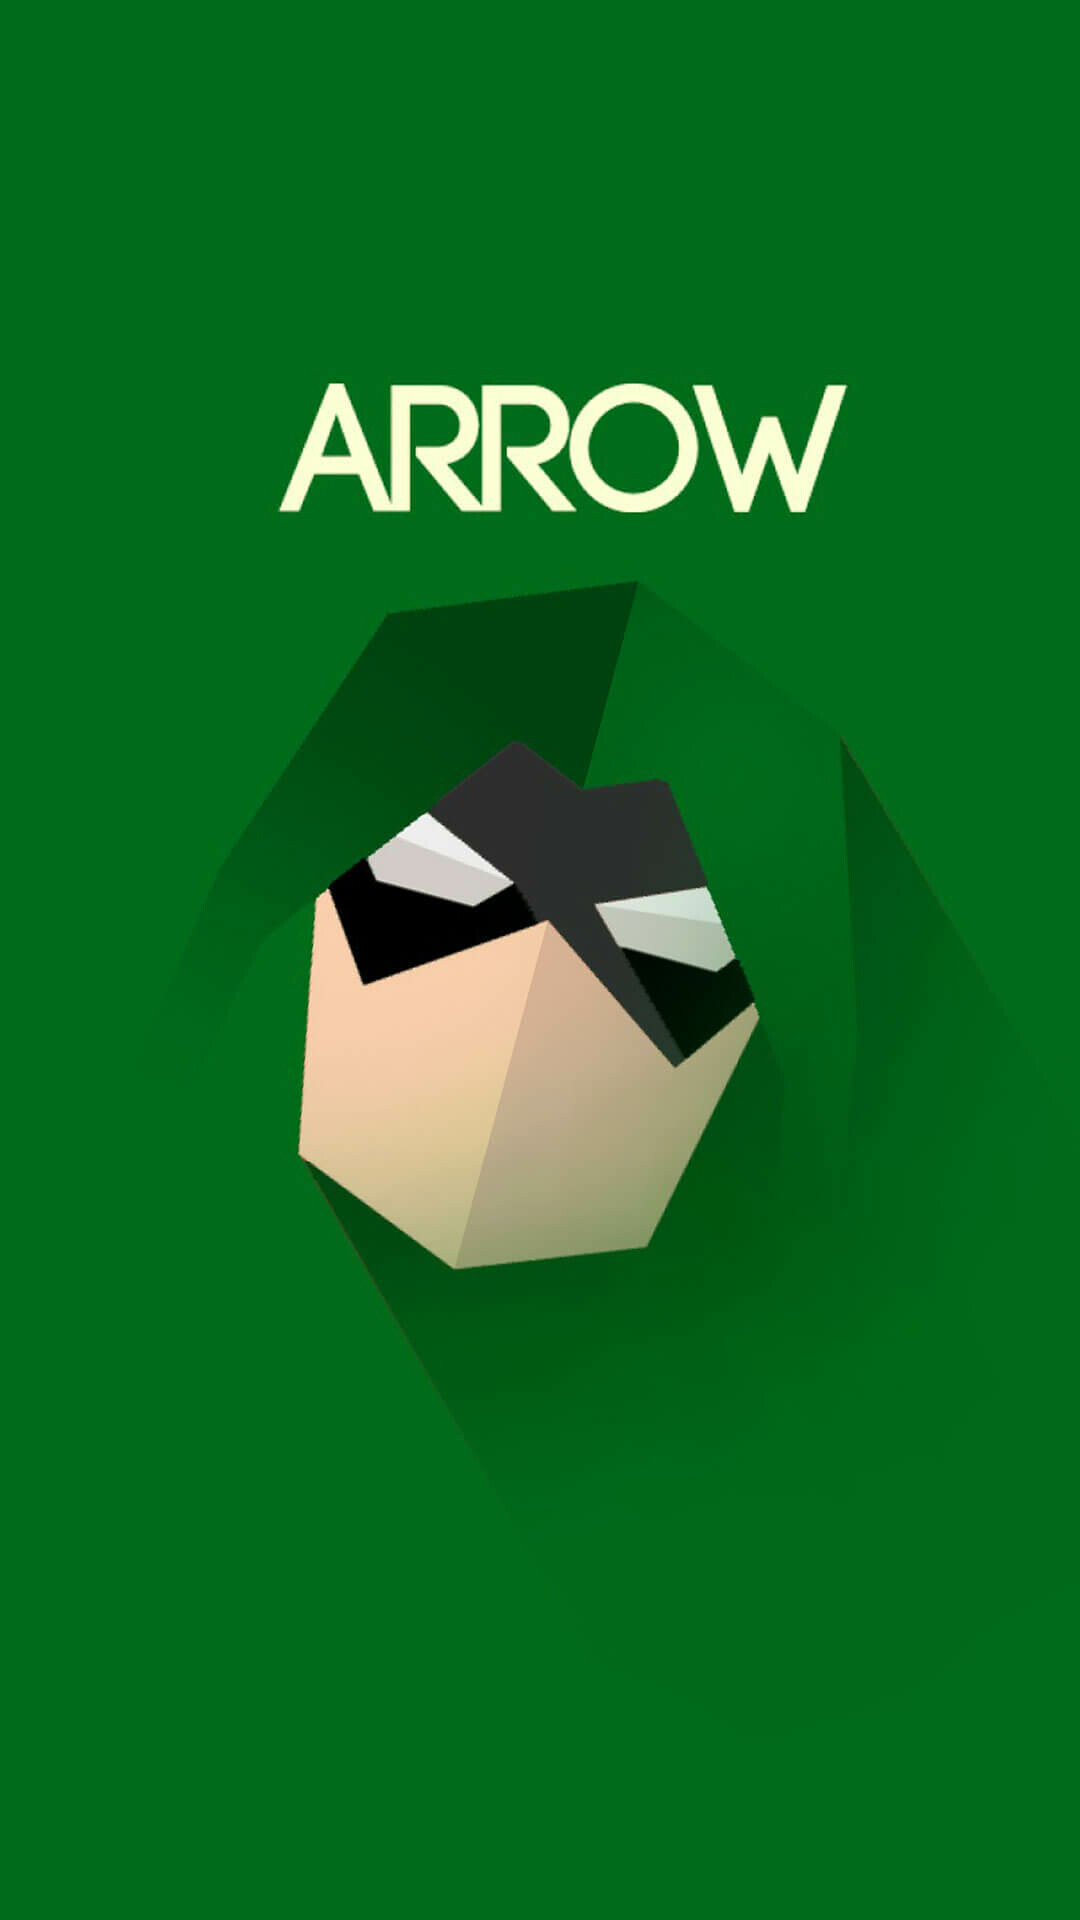 Green Arrow: An affluent playboy becomes a vengeful superhero, saving the city from villains. 1080x1920 Full HD Wallpaper.